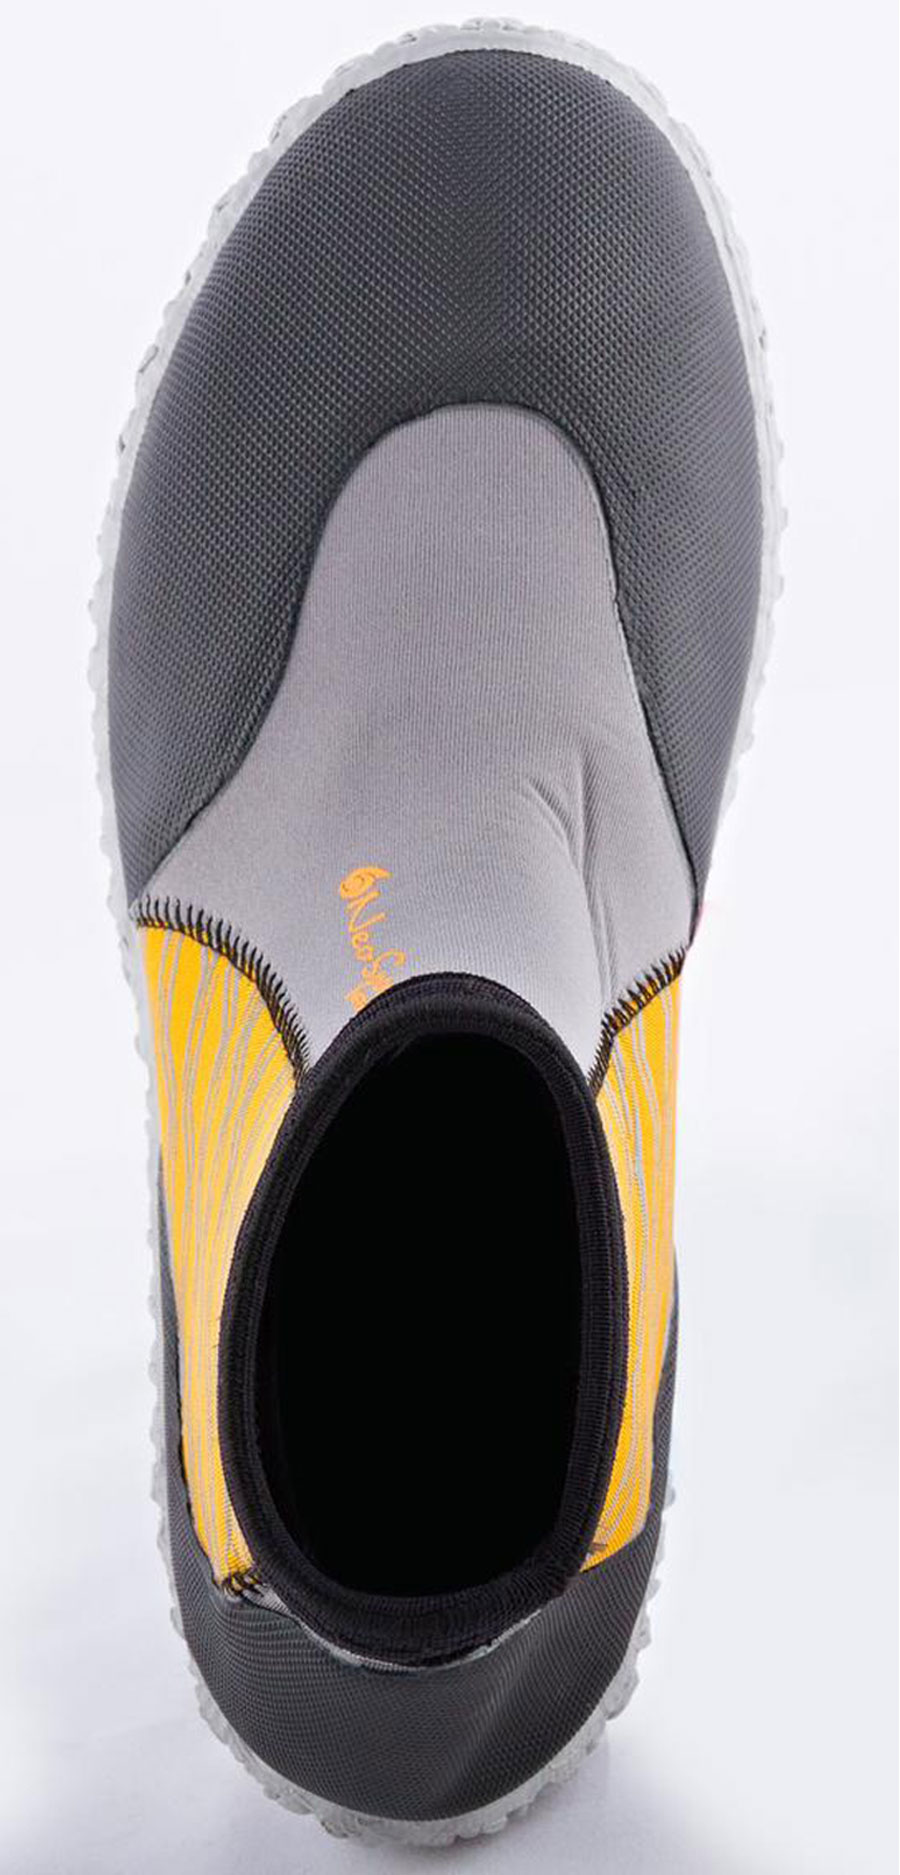 3mm NeoSport Men's Neoprene Low-Top Boots - Orange - image 4 of 5